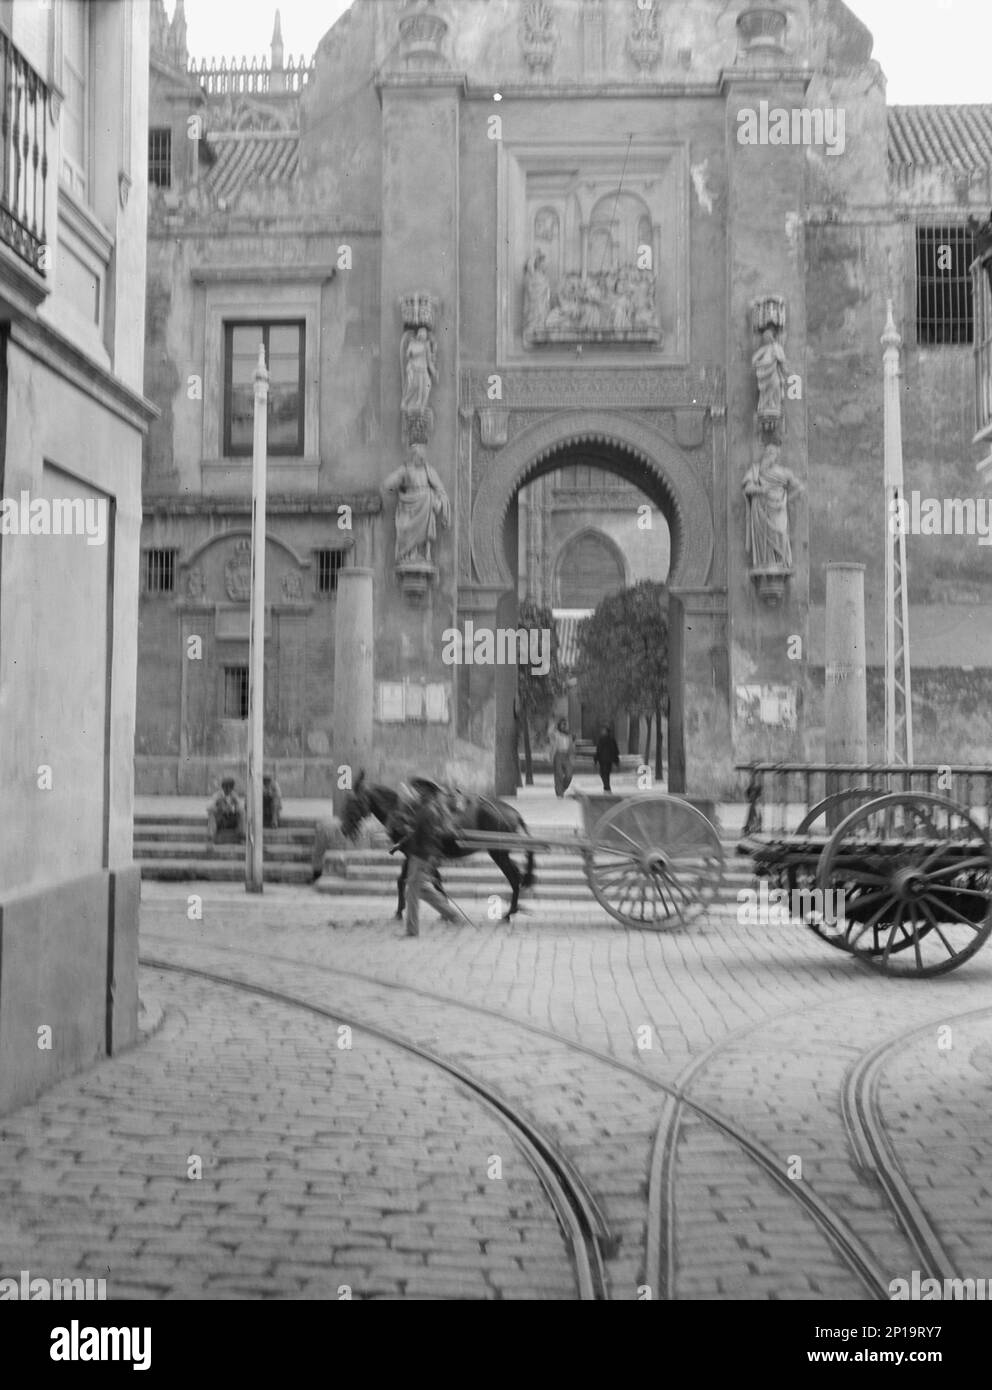 Reiseansichten von Europa, zwischen 1904 und 1938. Straße im Süden Spaniens – Gebäude mit Elementen maurischer und christlicher Architektur. Stockfoto